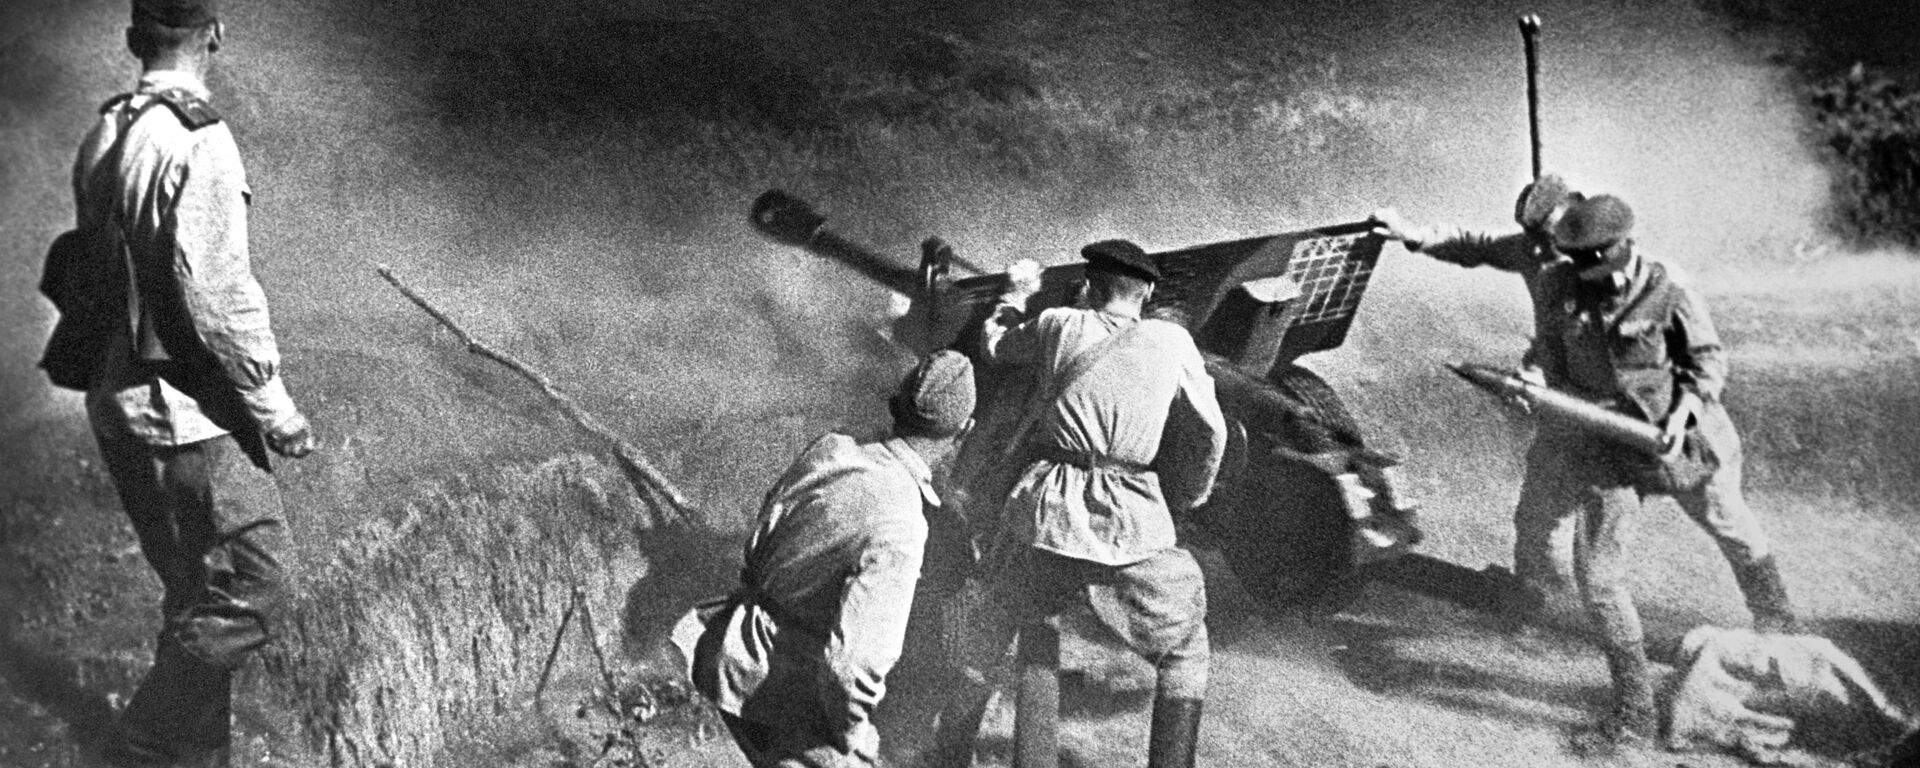 Артиљеријска јединица током борбе, Северни Кавказ, 1943. година - Sputnik Србија, 1920, 22.06.2021